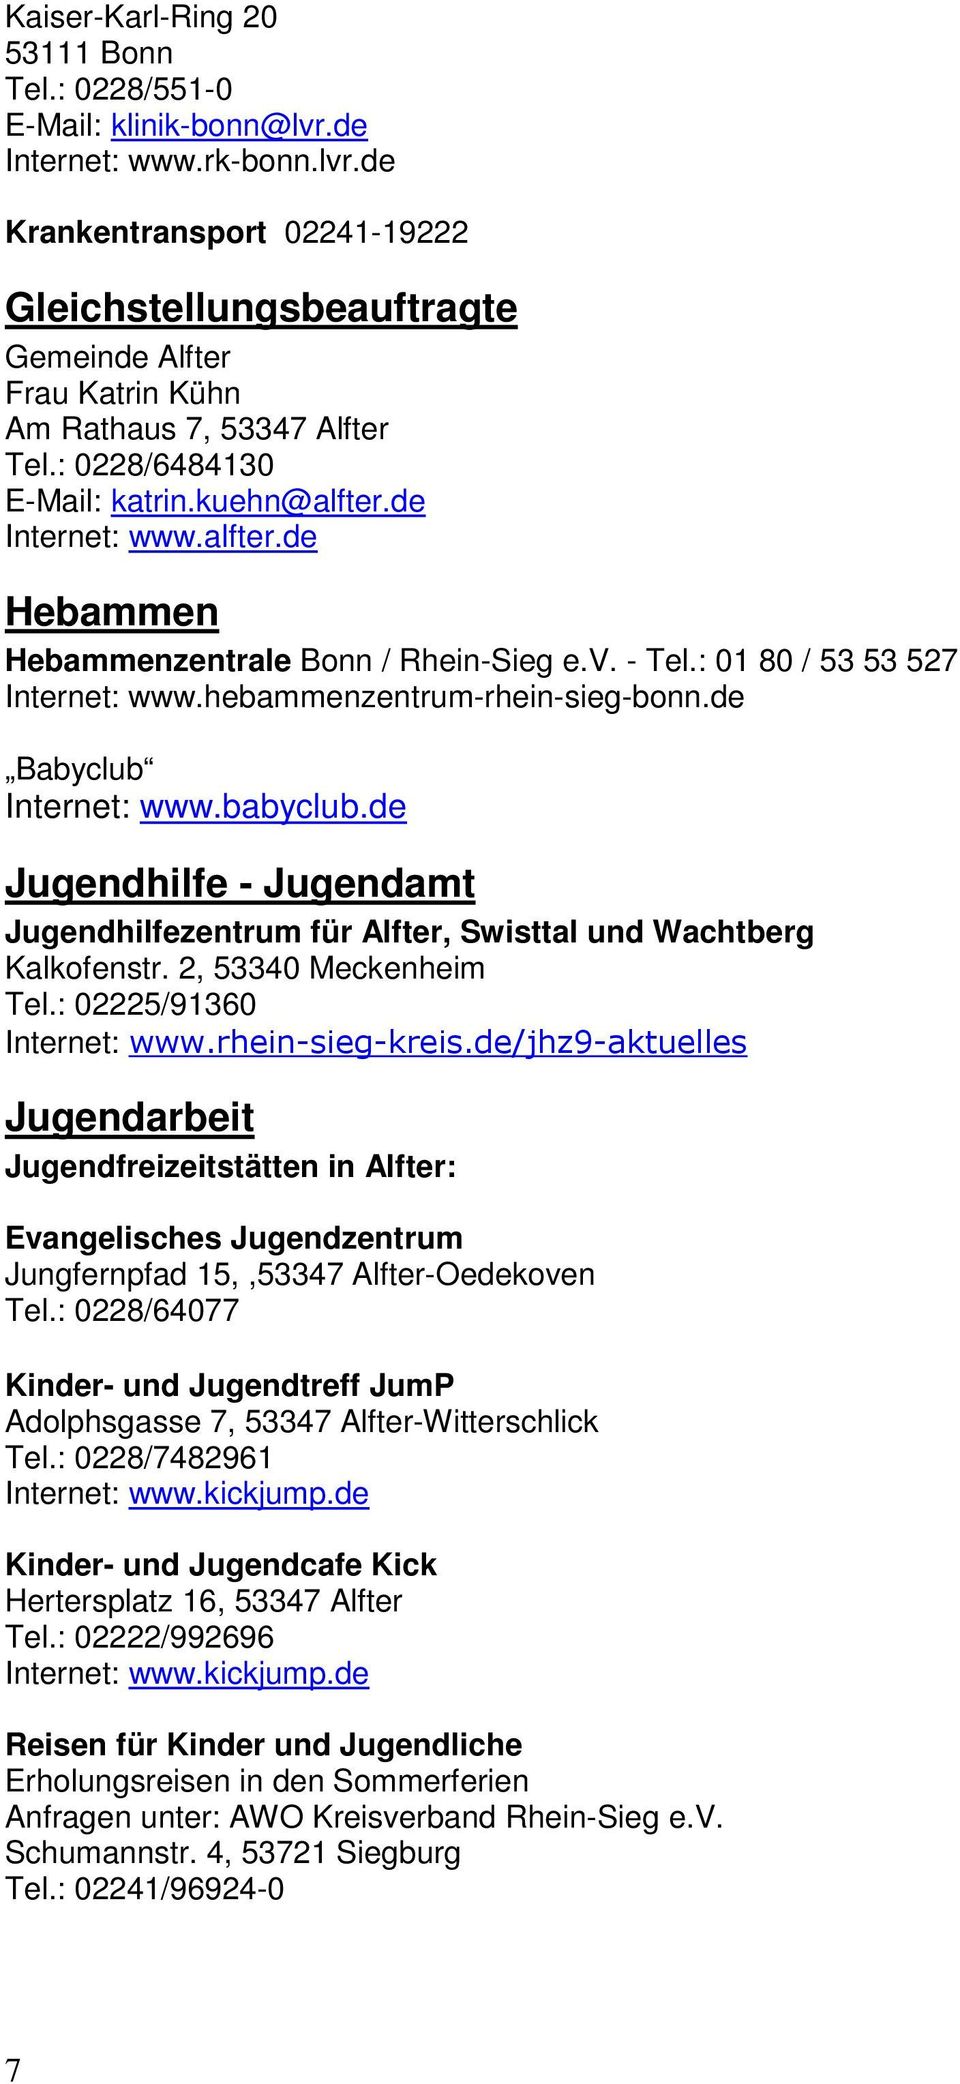 de Babyclub Internet: www.babyclub.de Jugendhilfe - Jugendamt Jugendhilfezentrum für Alfter, Swisttal und Wachtberg Kalkofenstr. 2, 53340 Meckenheim Tel.: 02225/91360 Internet: www.rhein-sieg-kreis.